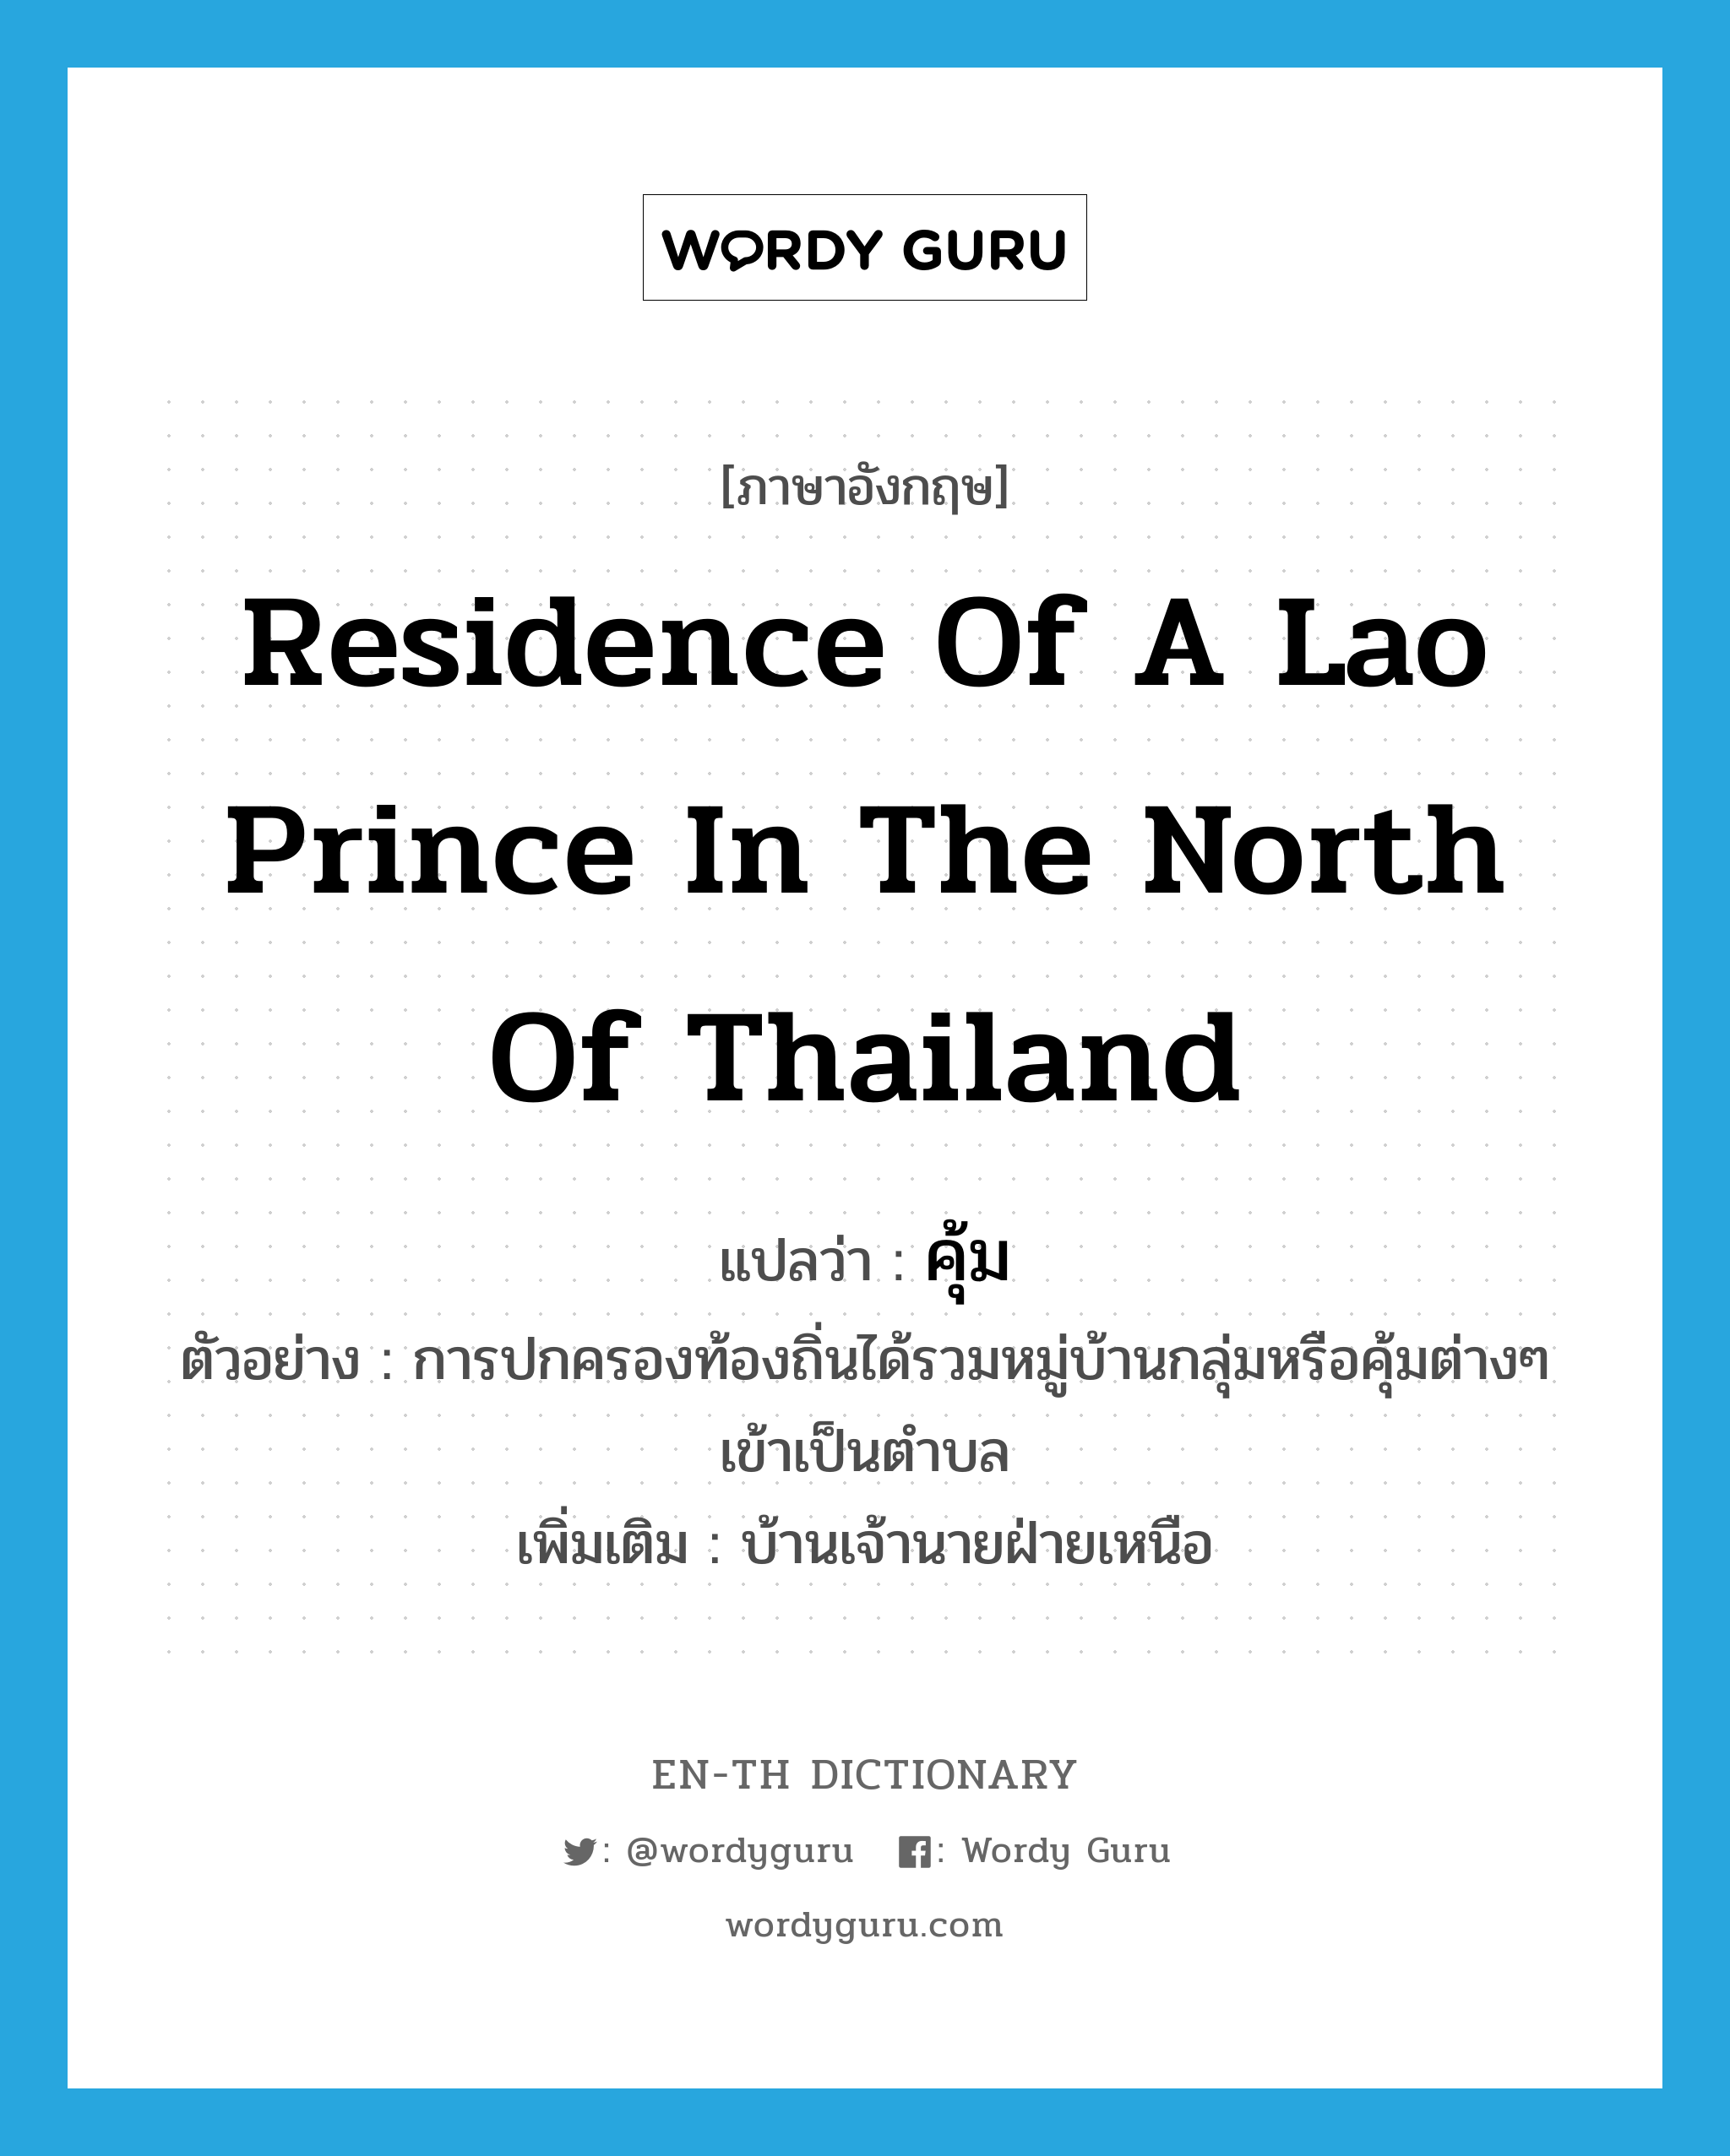 residence of a Lao prince in the north of Thailand แปลว่า?, คำศัพท์ภาษาอังกฤษ residence of a Lao prince in the north of Thailand แปลว่า คุ้ม ประเภท N ตัวอย่าง การปกครองท้องถิ่นได้รวมหมู่บ้านกลุ่มหรือคุ้มต่างๆ เข้าเป็นตำบล เพิ่มเติม บ้านเจ้านายฝ่ายเหนือ หมวด N